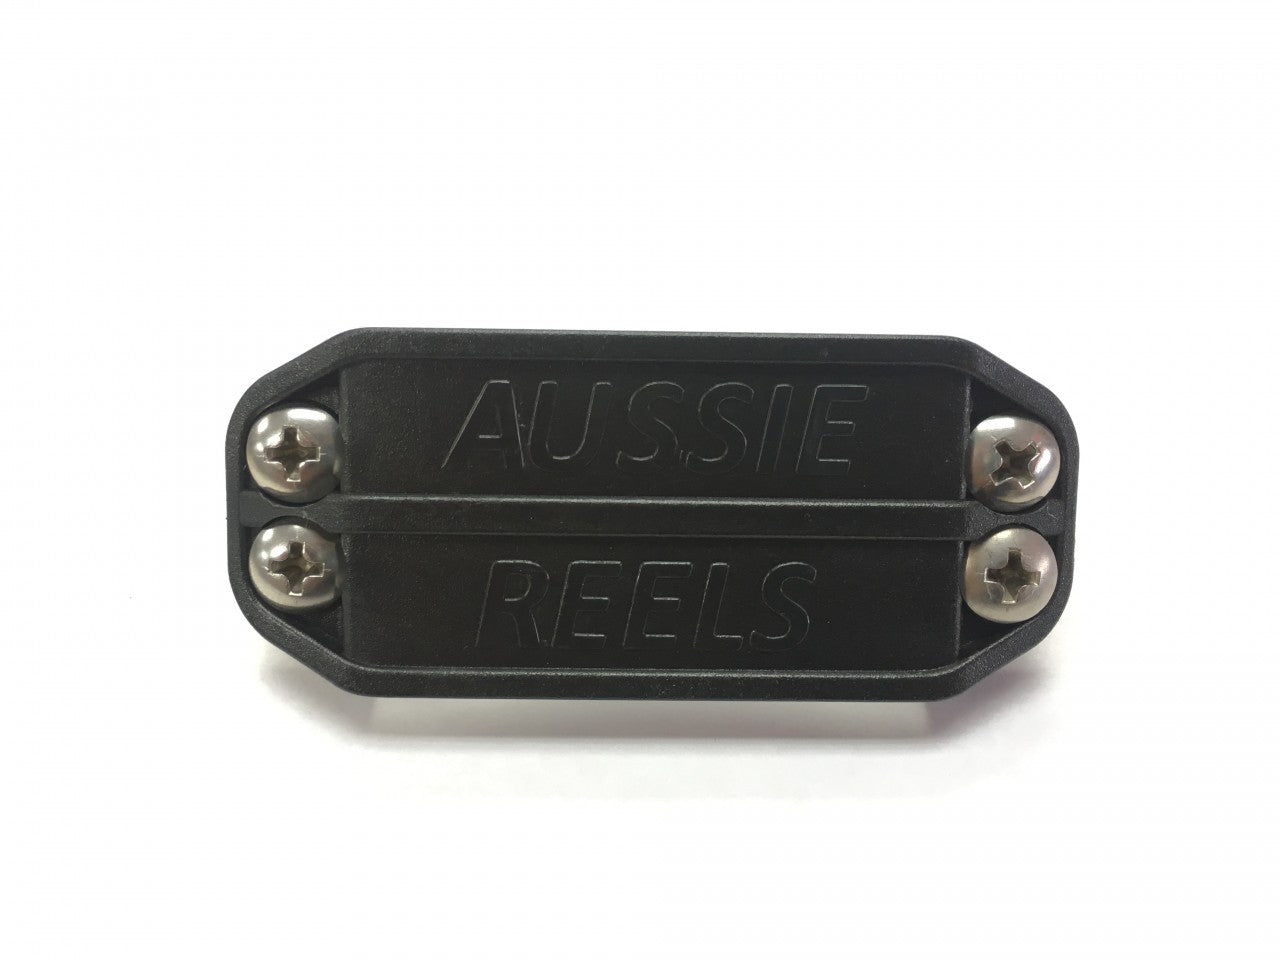 Aussie Reels Belt Adapter for Weight Belts